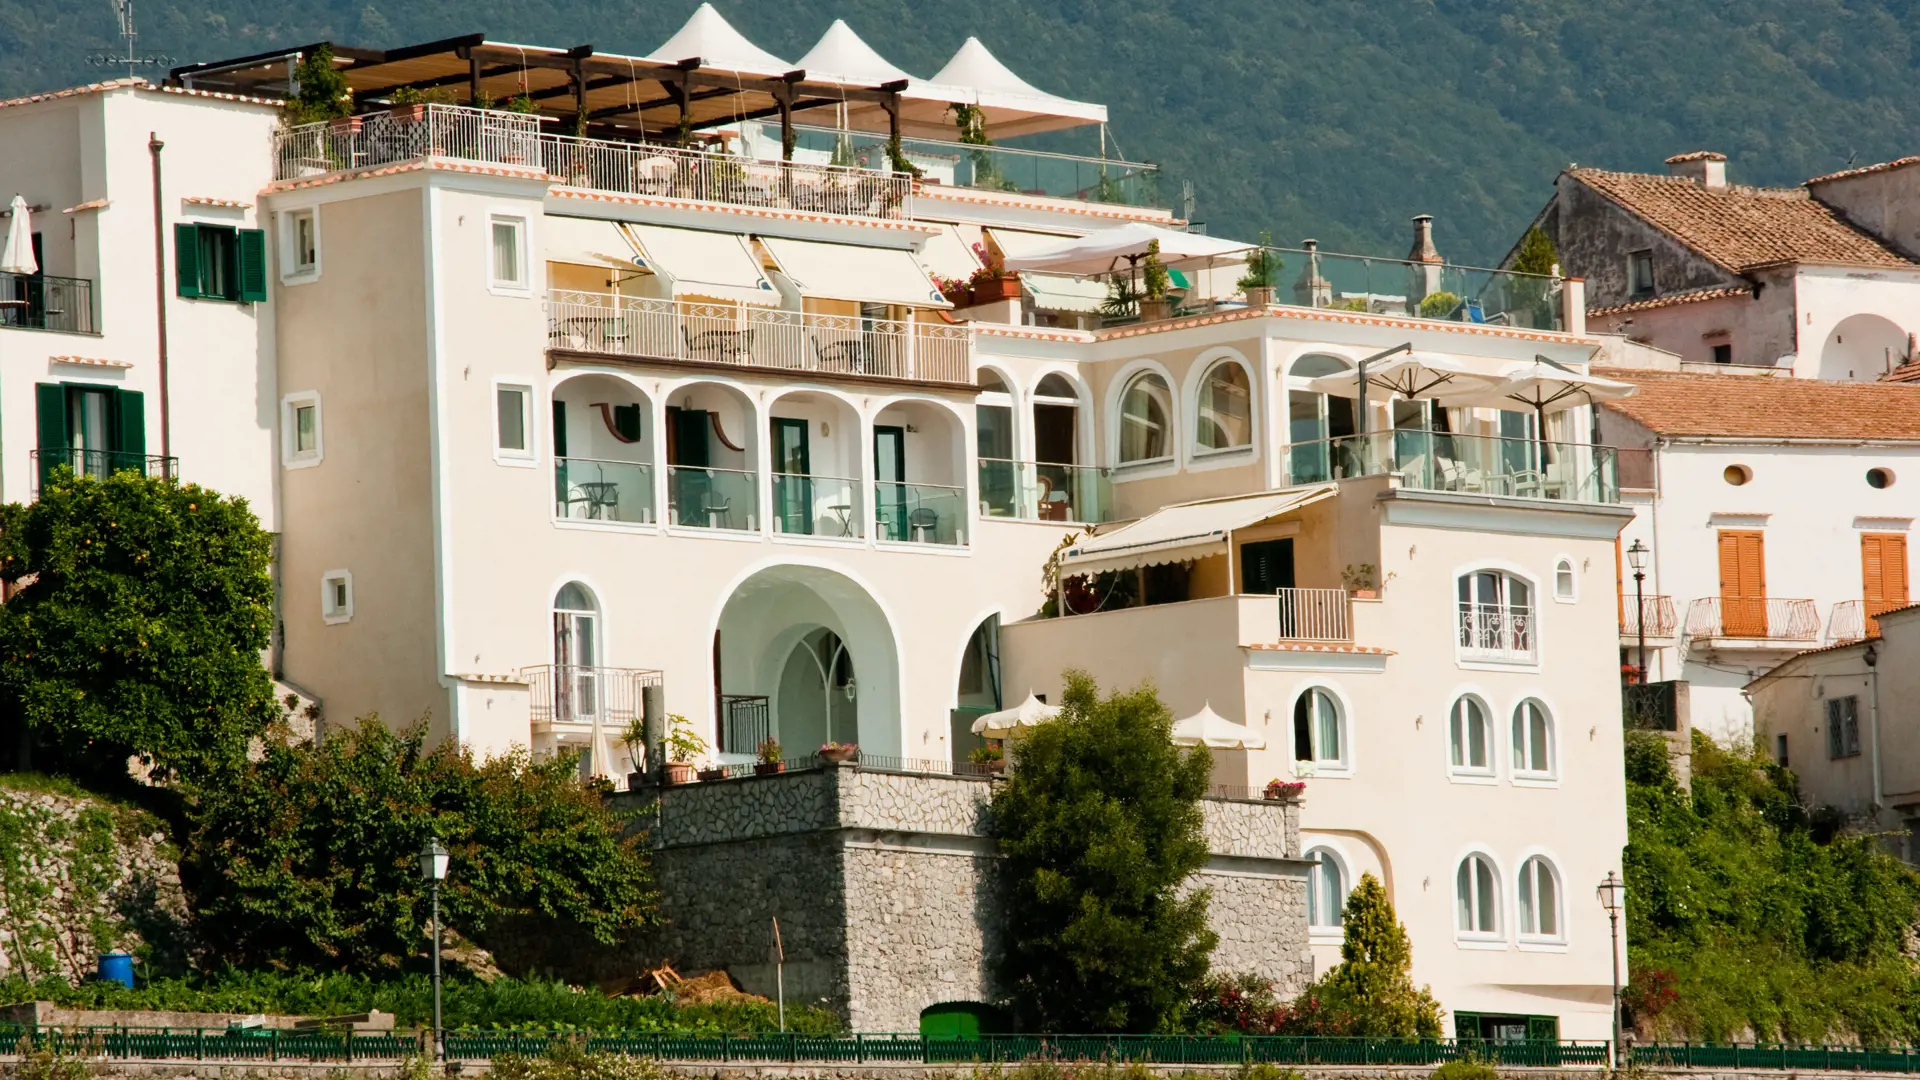 Hotel Bonadies ligger på en skråning i Ravello med en enestående udsigt